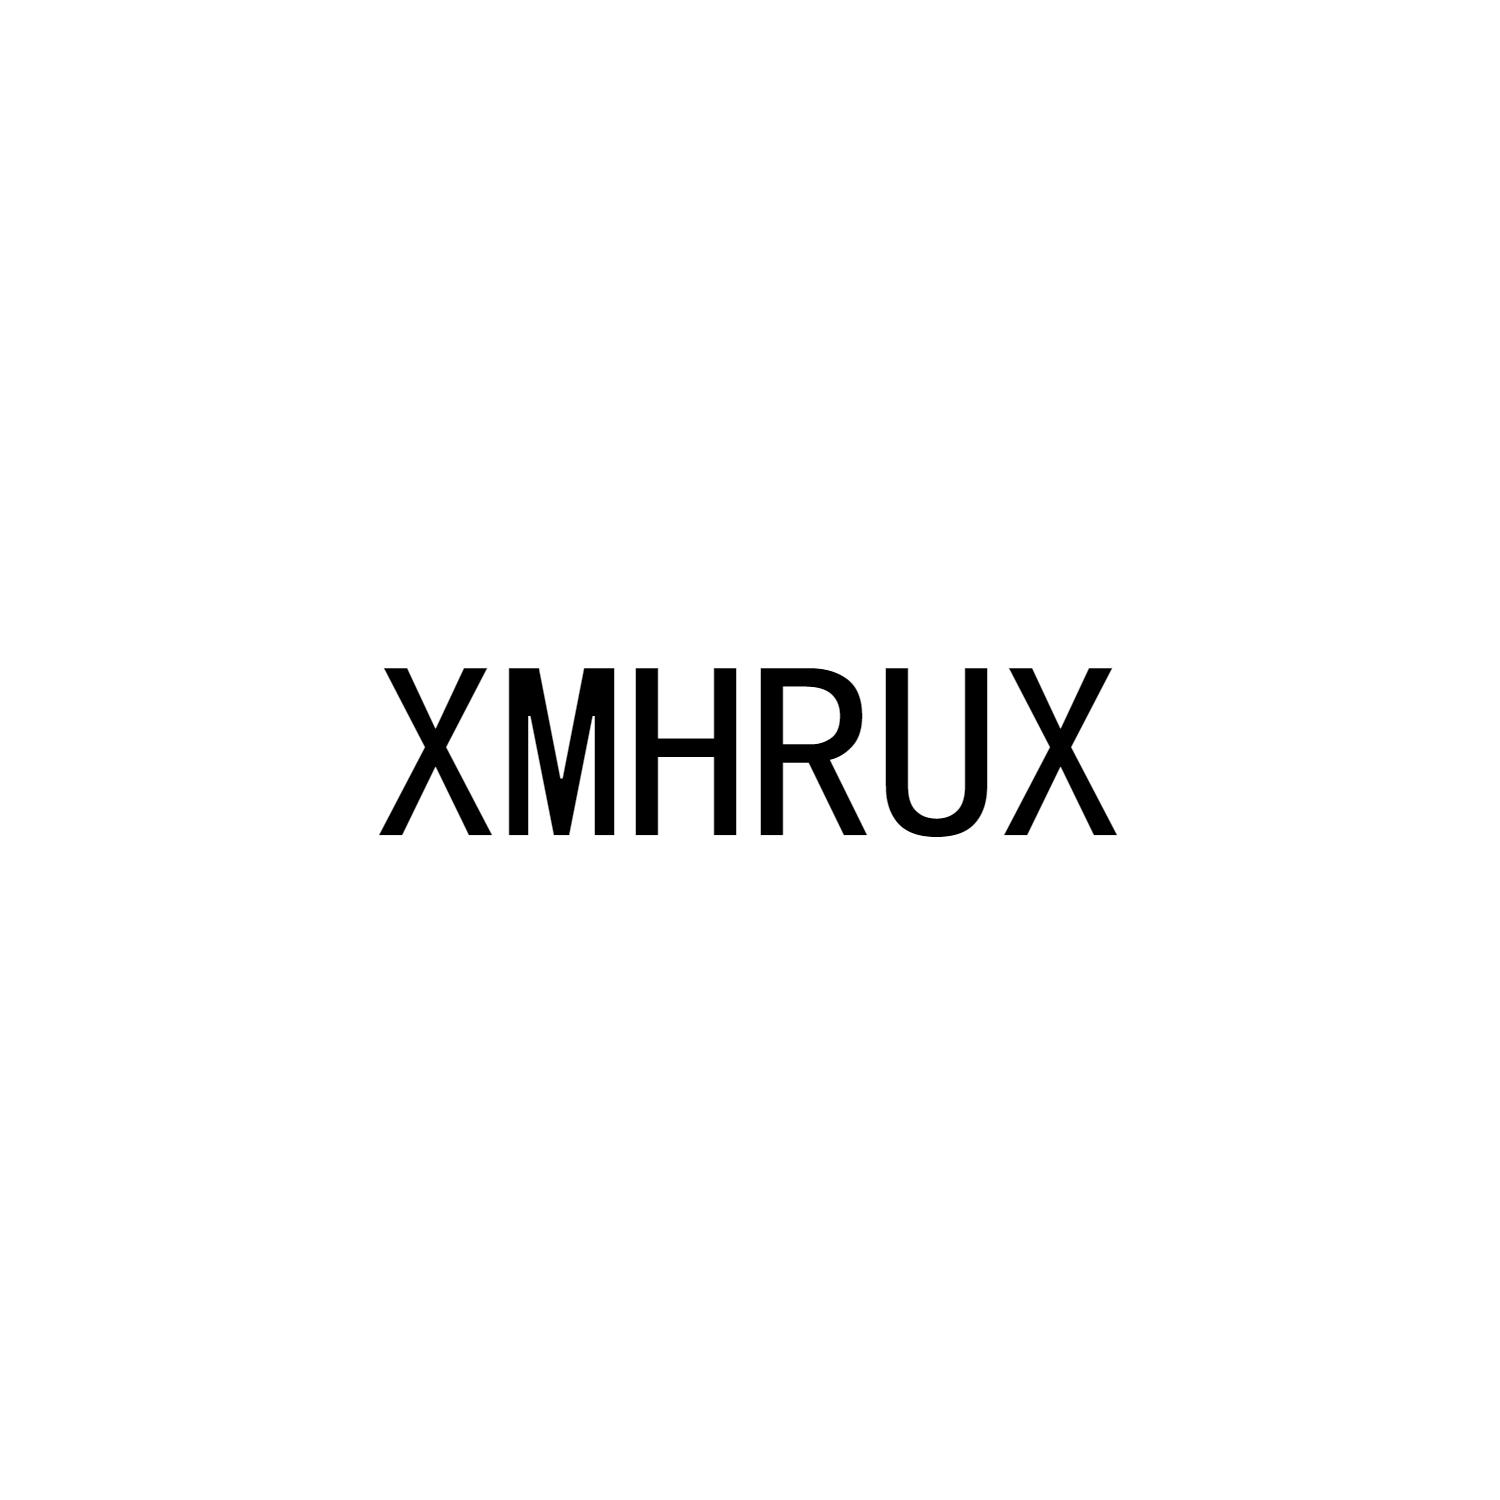 XMHRUX